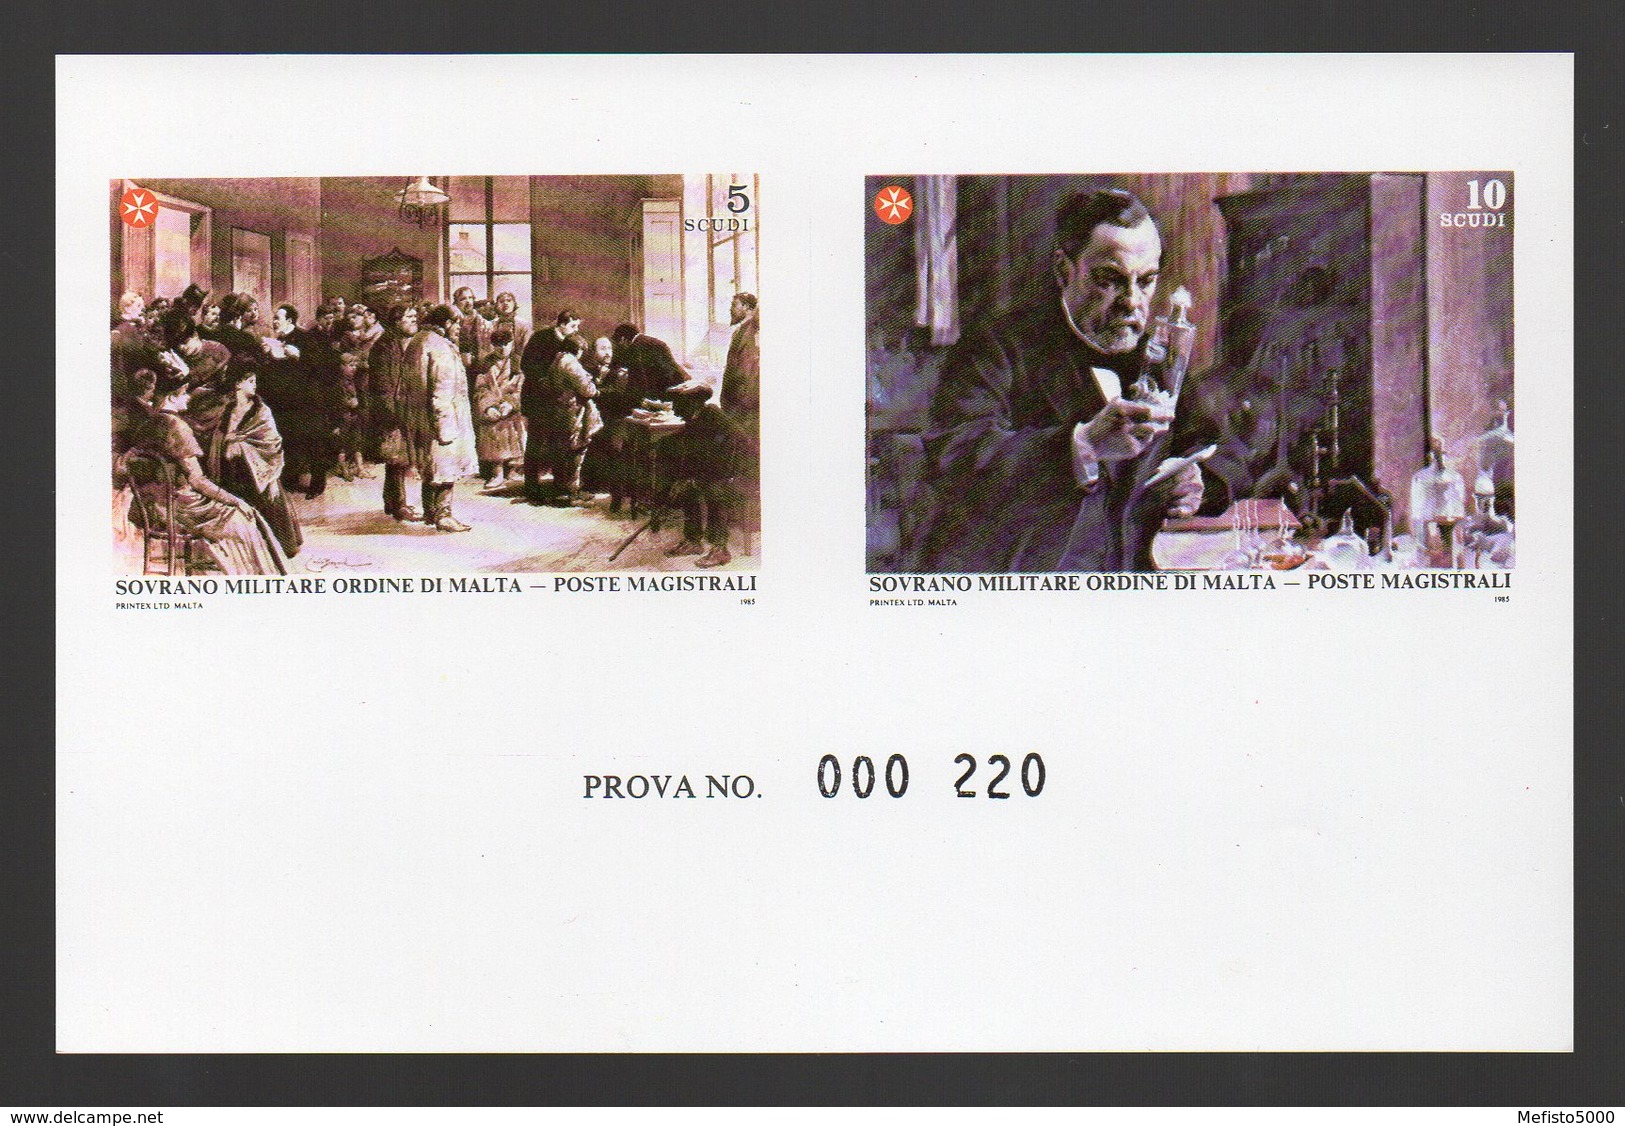 SMOM Epreuve De Luxe Collective Numérotée (PROVA) SAS 241/2 Deluxe Numbered Proof Art Paintings Tableau Pasteur Medicine - Louis Pasteur